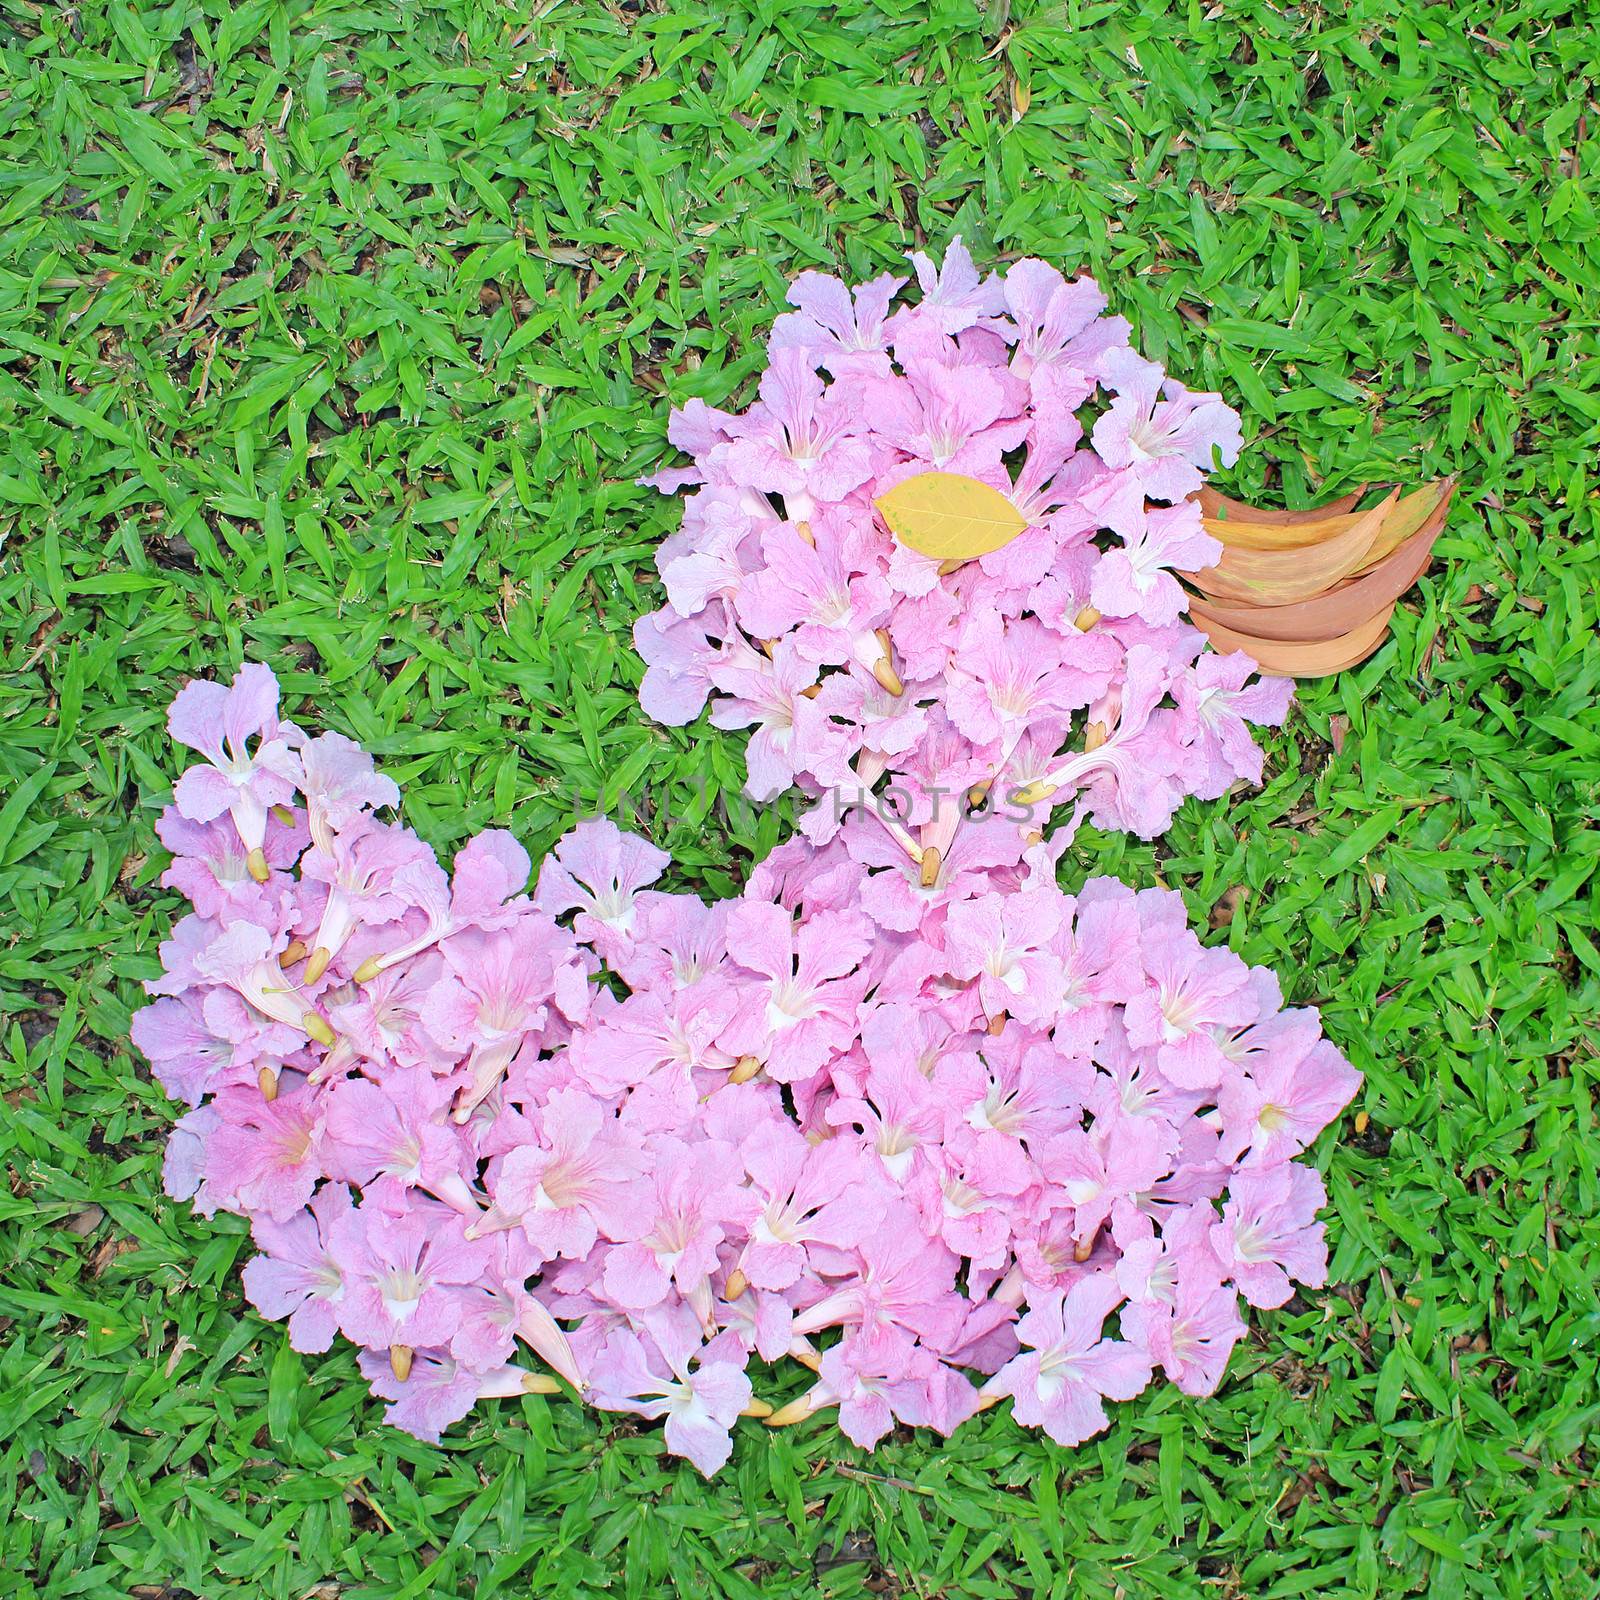 Flower arrangements in the shape of Duck by foto76